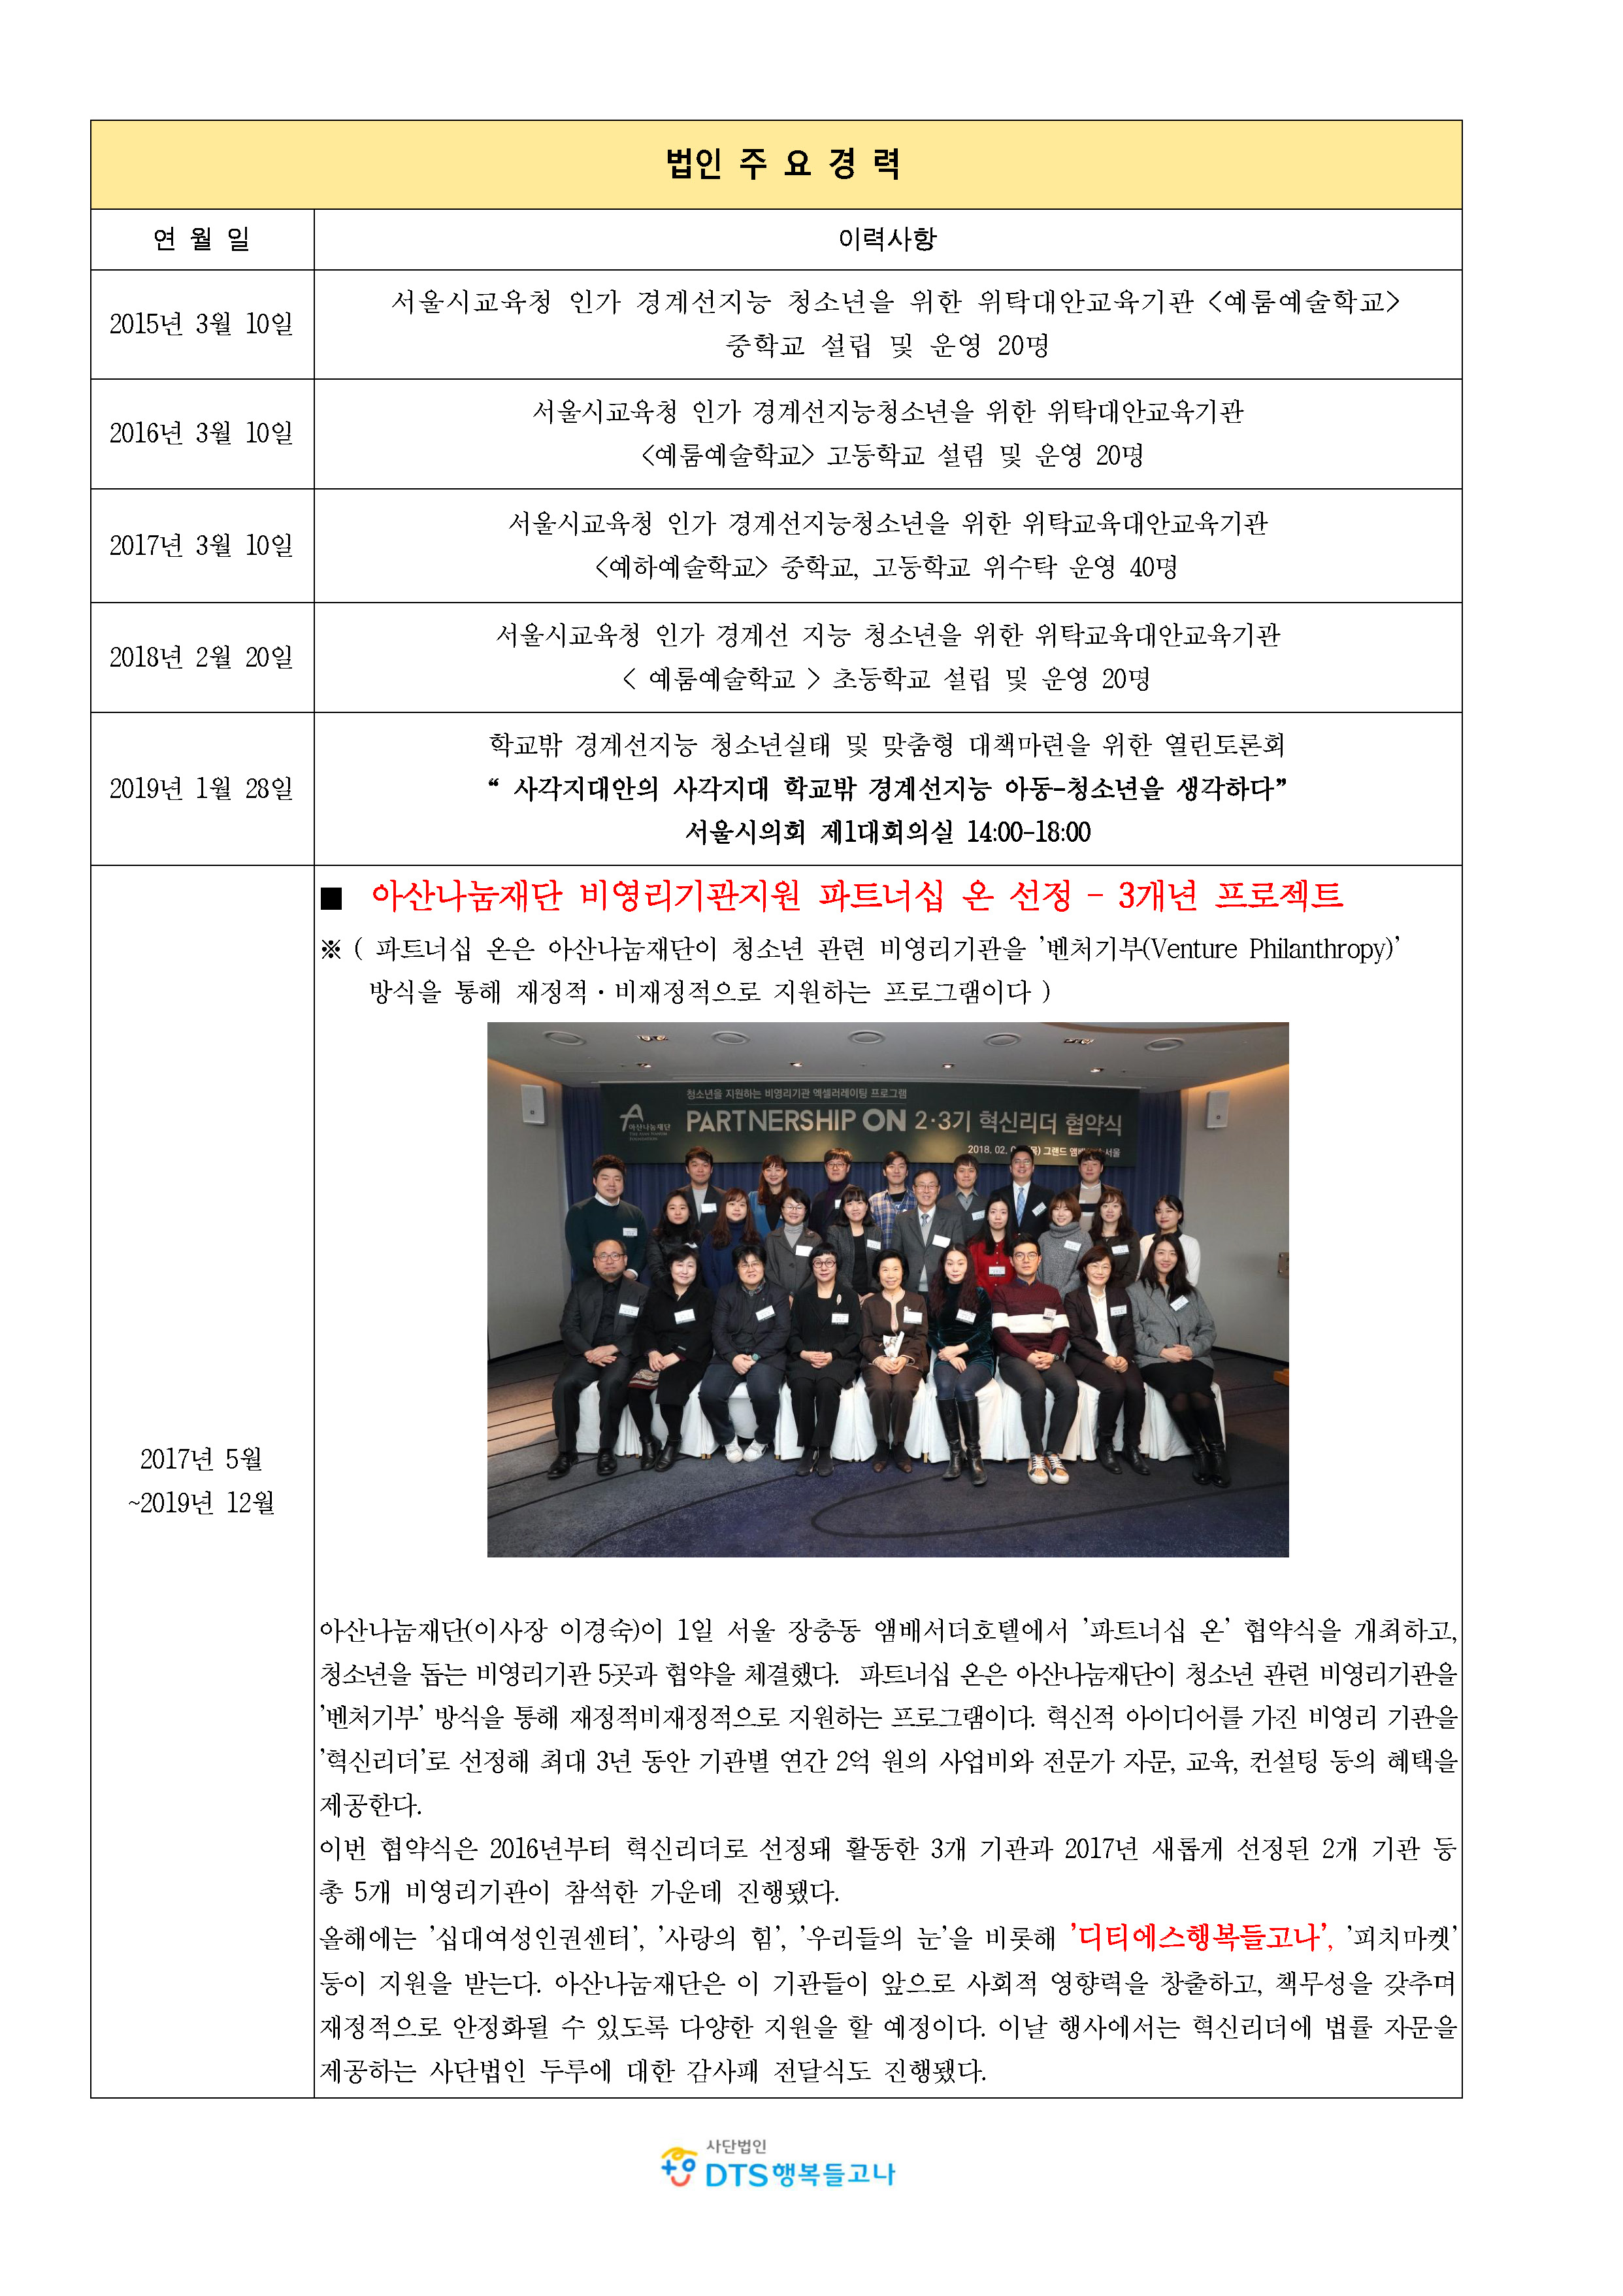 2020_ 사단법인 DTS행복들고나_소개(사회공헌)_페이지_3.jpg